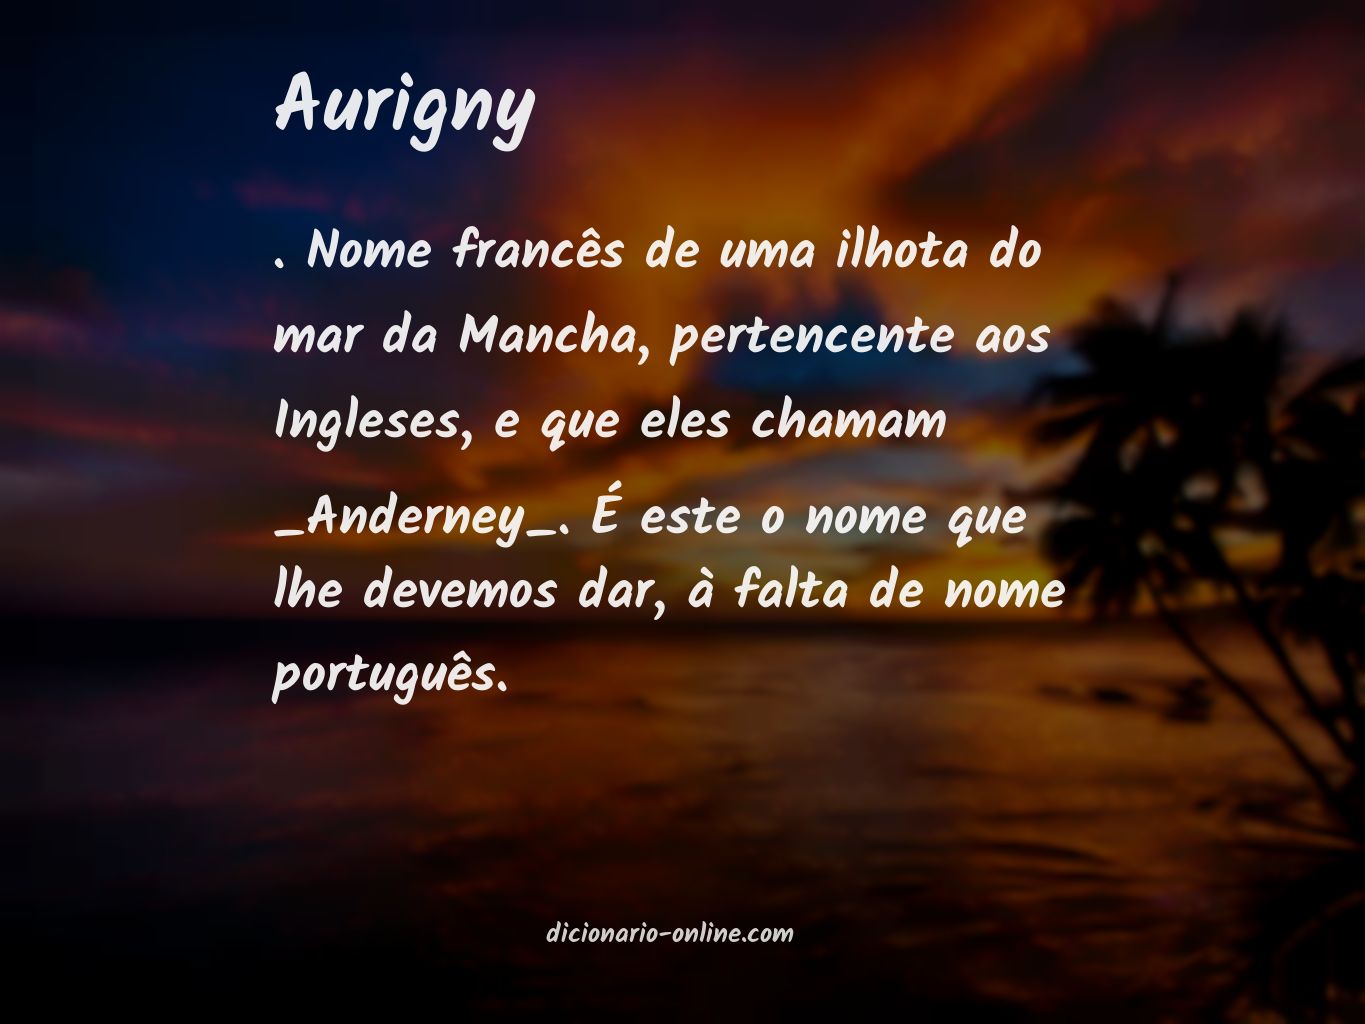 Significado de aurigny